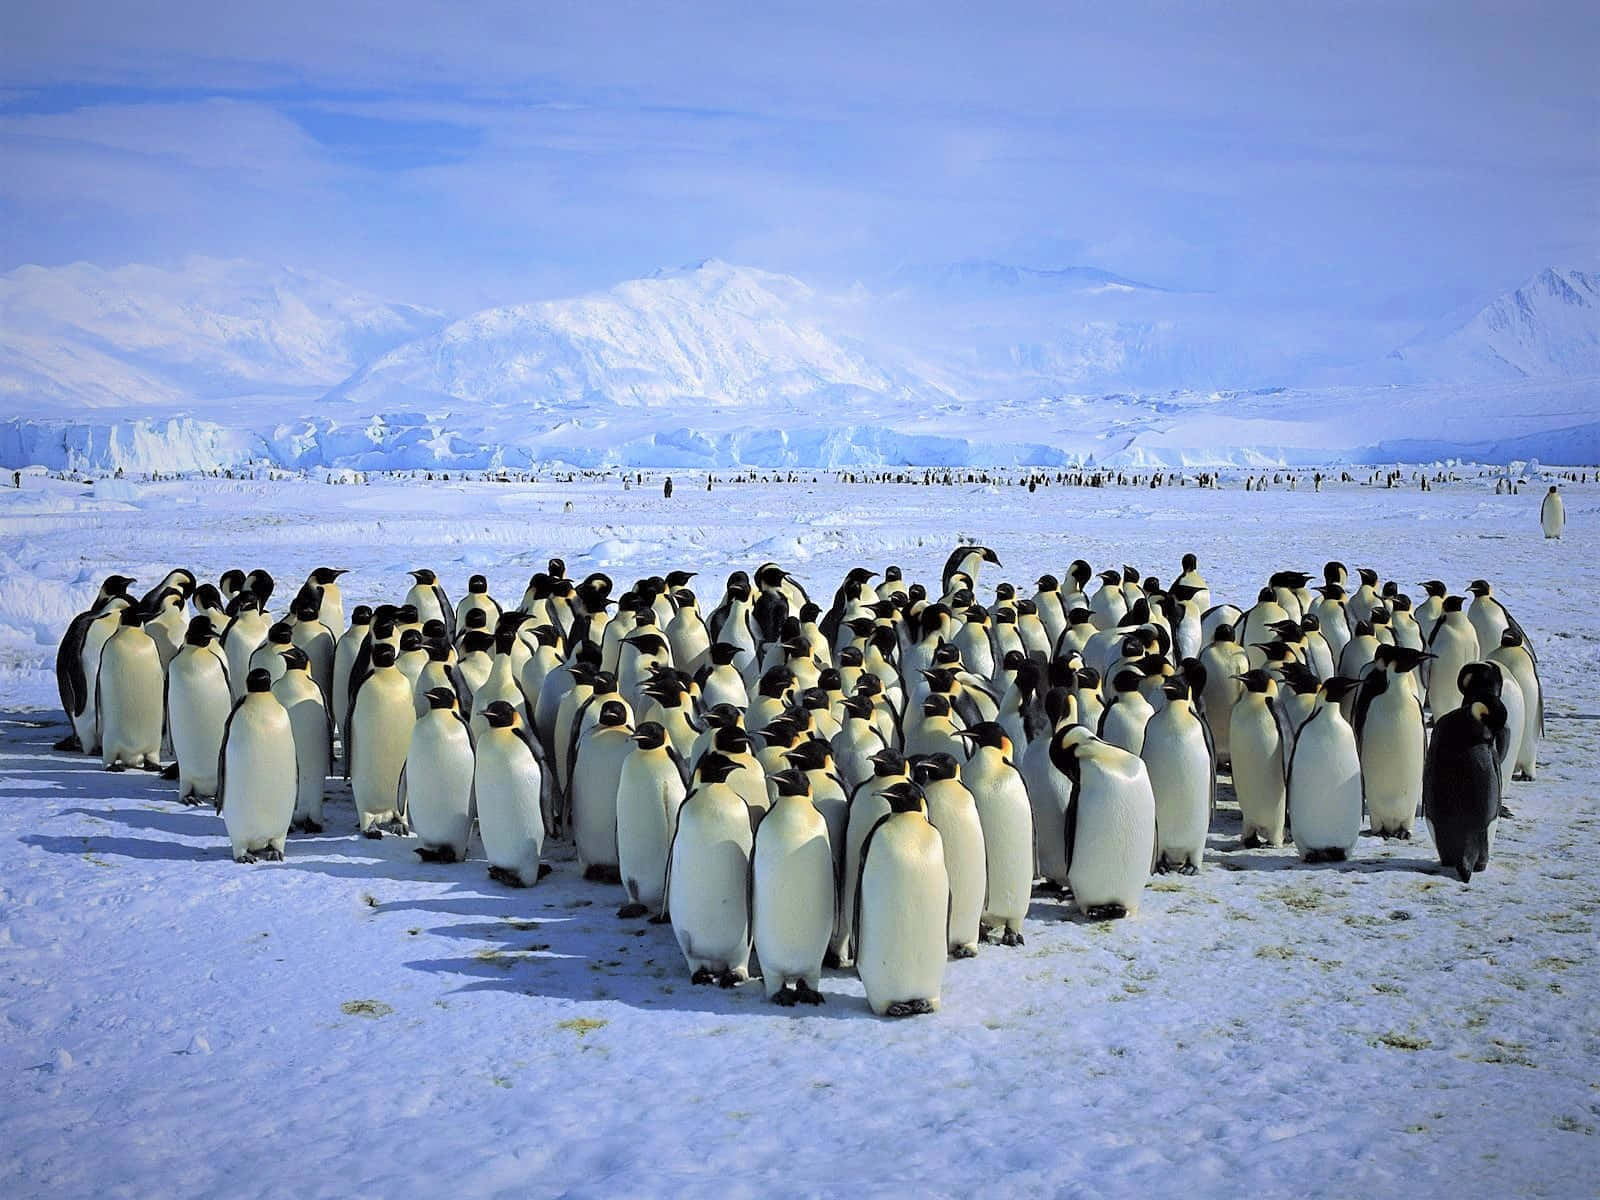 The Wonders of Antarctica